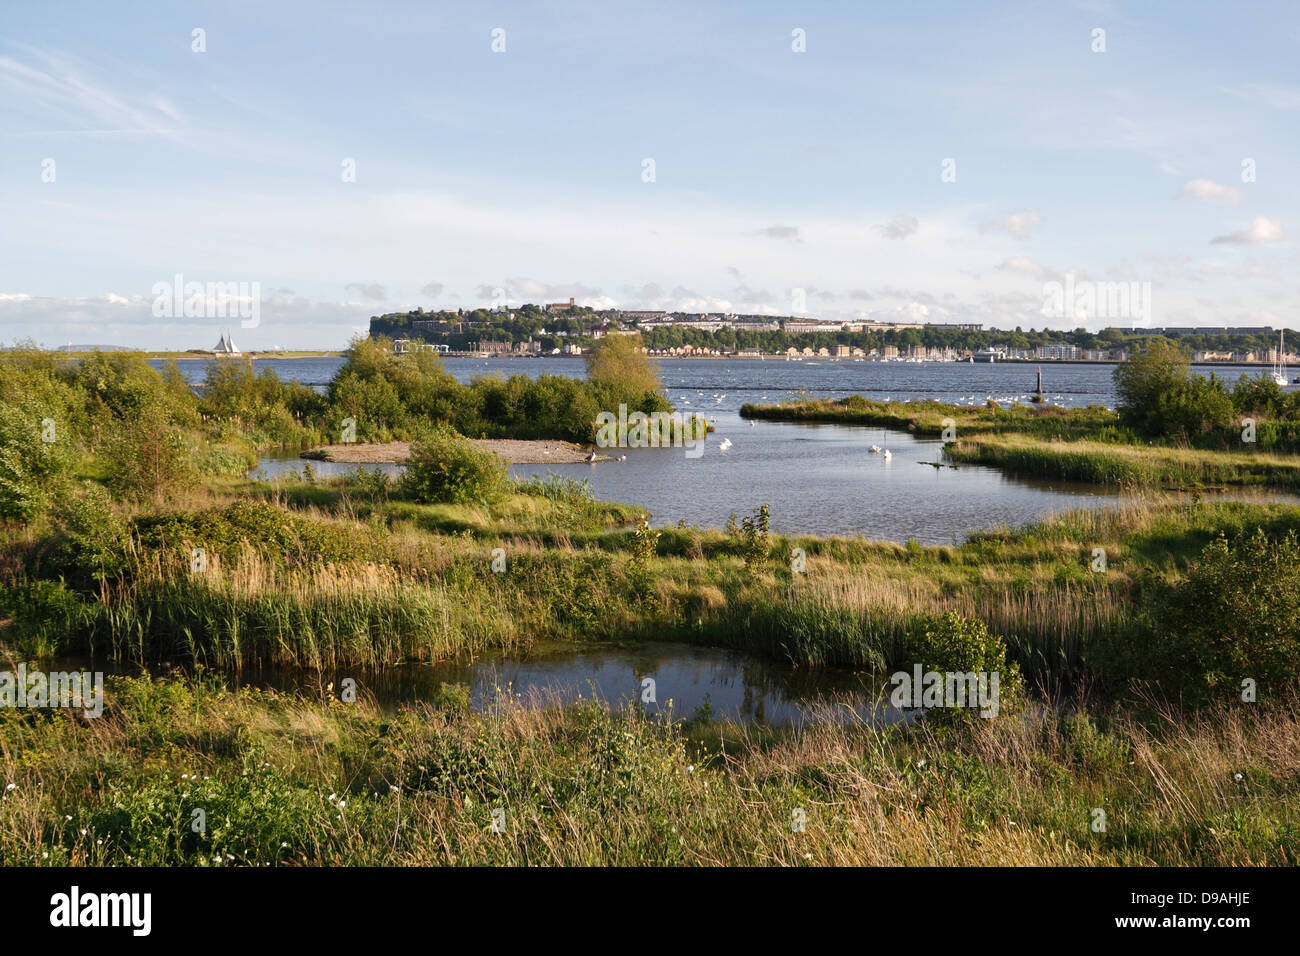 Réserve naturelle des terres humides de Cardiff Bay, pays de Galles, Royaume-Uni, point chaud de la biodiversité, habitat faunique terrestre récupéré Banque D'Images